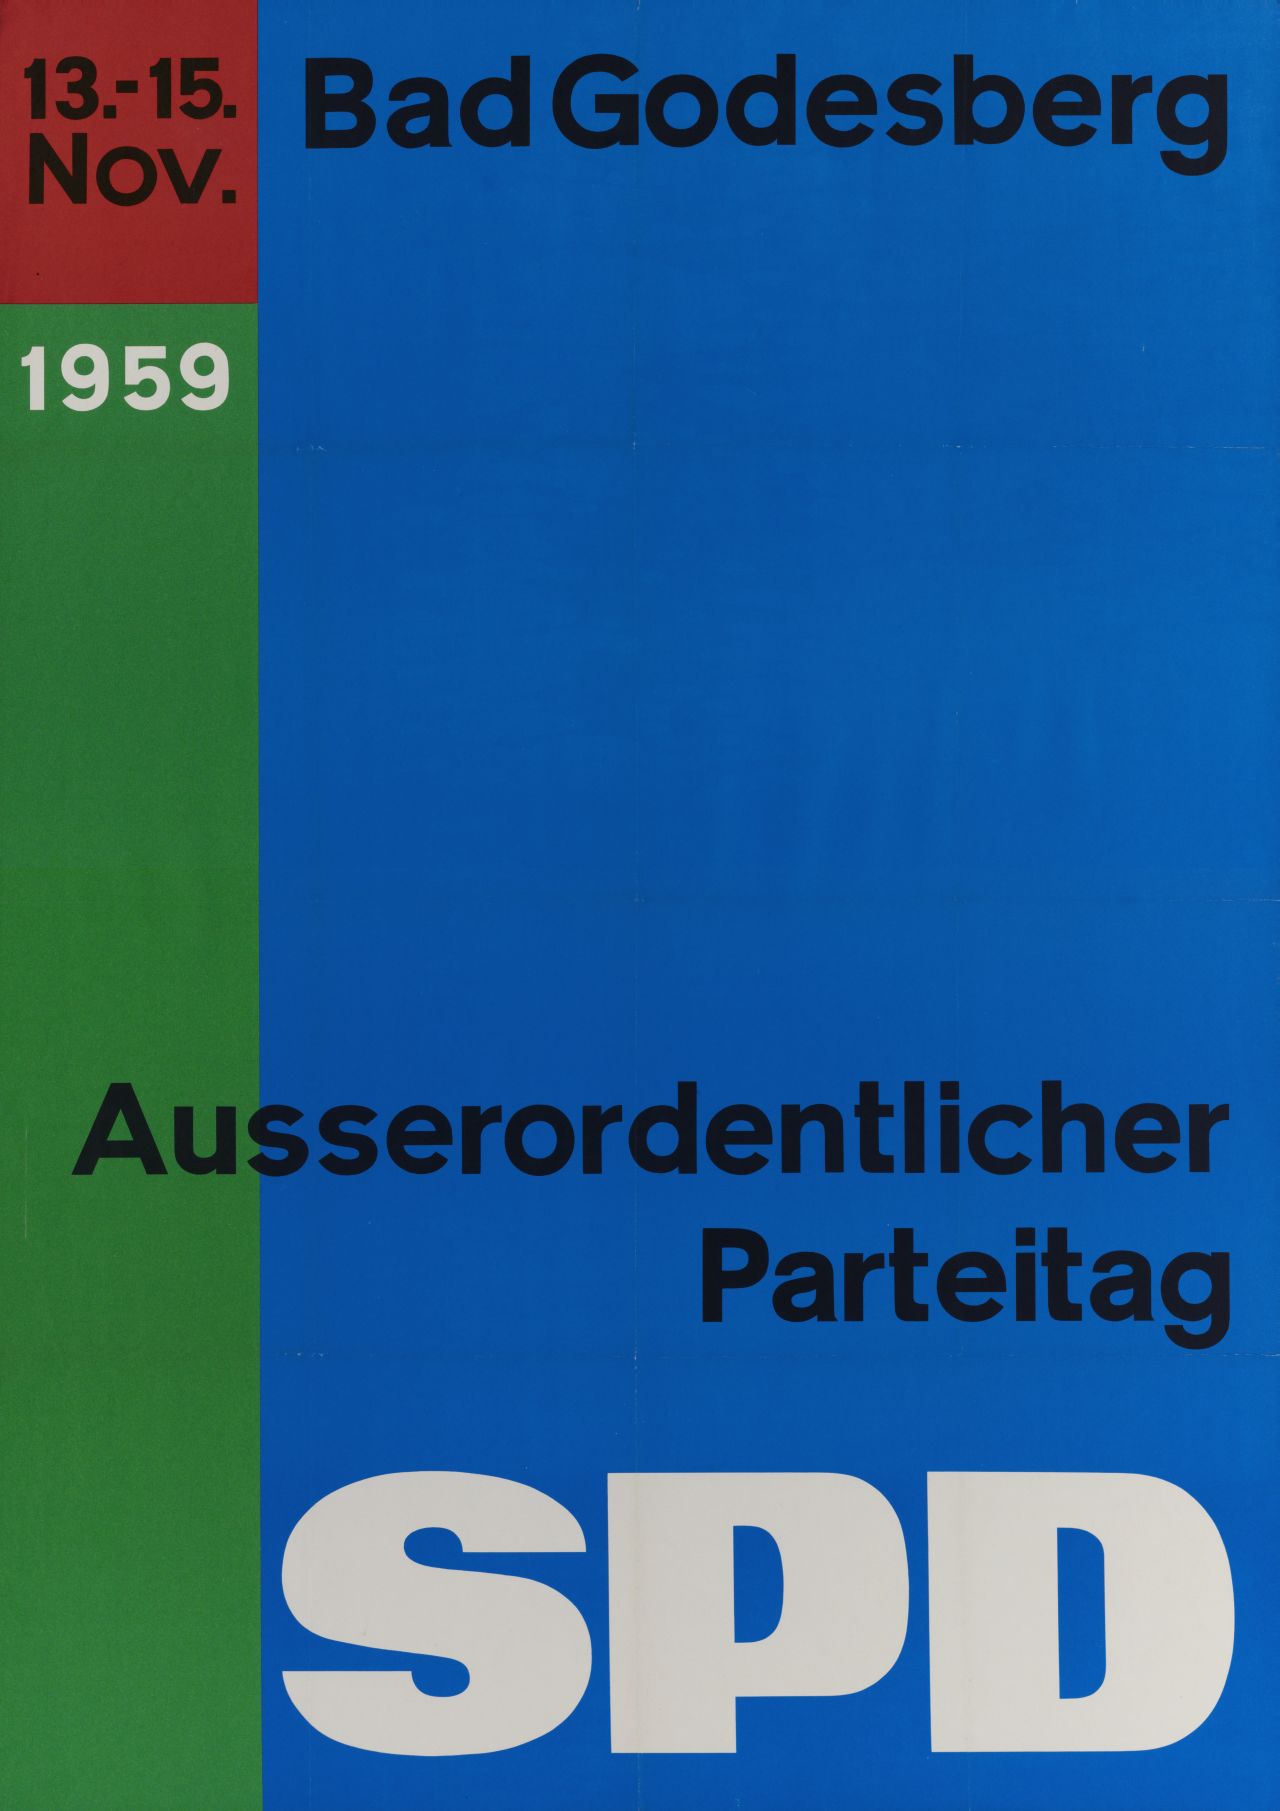 Das Plakat ist aufgeteilt in drei verschieden große Farbfelder in blau, grün und rot. In schwarzer und weißer Schrift folgender Text: 13.-15. Nov. 1959 Bad Godesberg Ausserordentlicher Parteitag SPD.